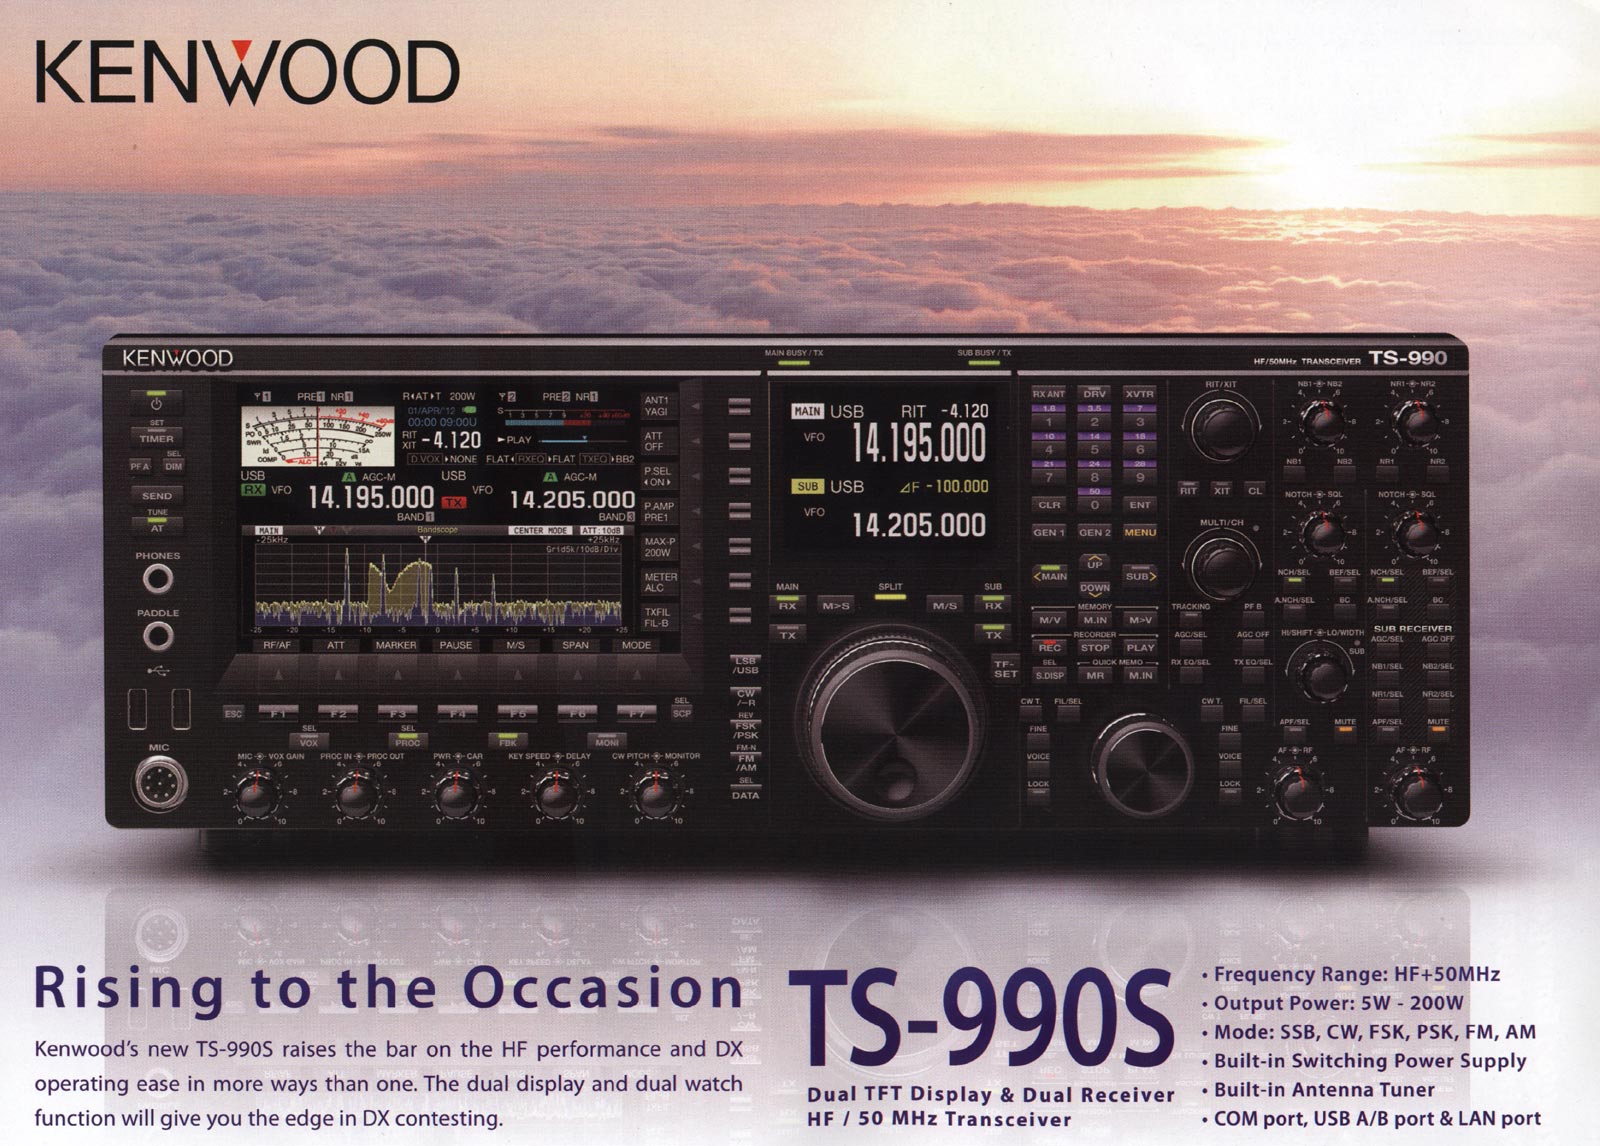 Publicité Kenwood TS-990s parue dans QST juin 2012